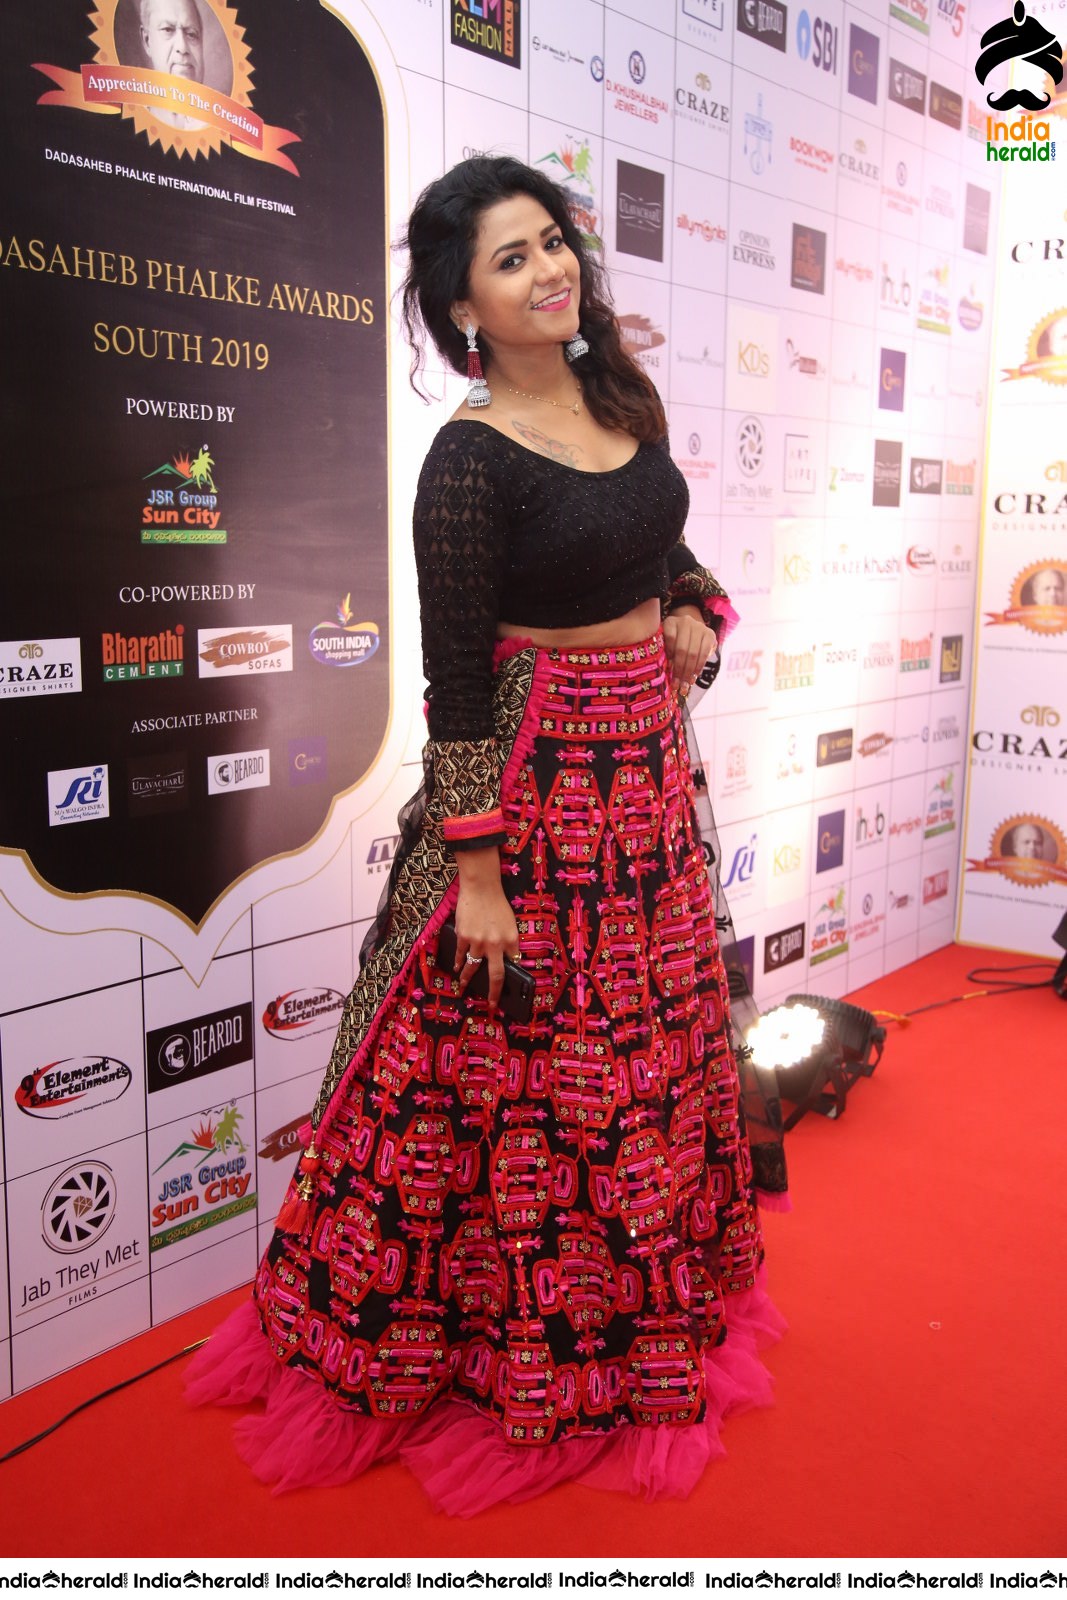 Actress Jyothi Recent Photos at an event Red Carpet